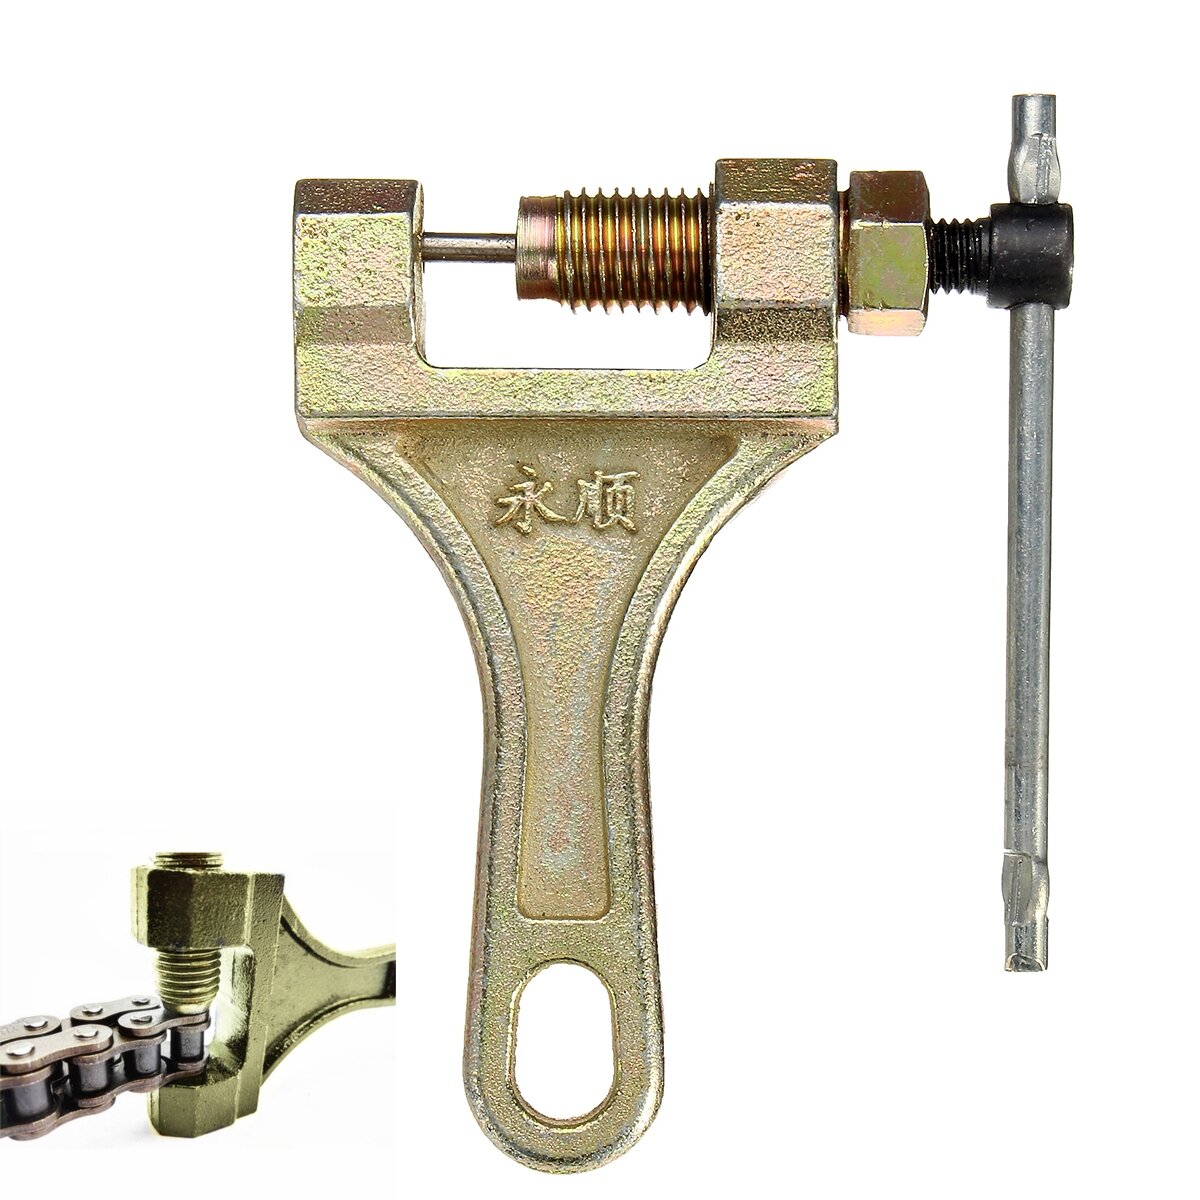 chain repair tool